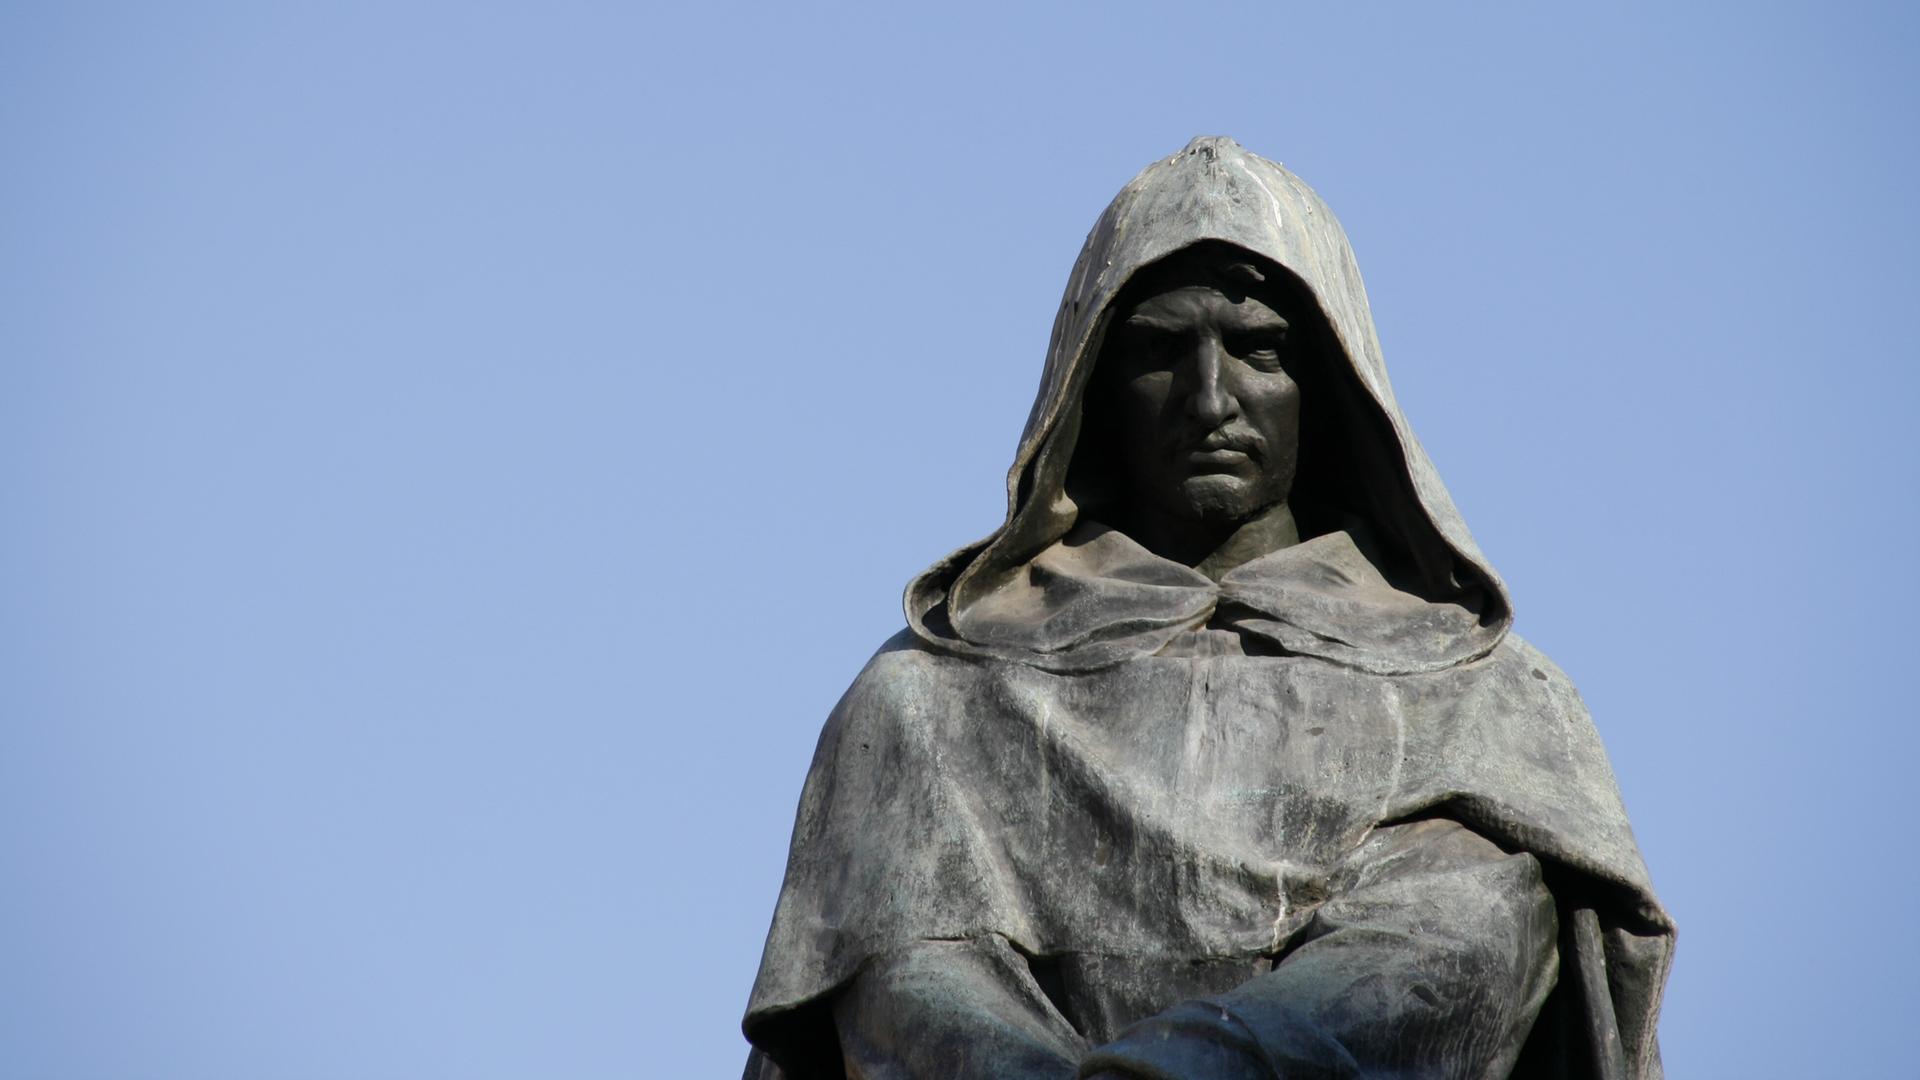 Die 1889 errichtete Statue des Philosophen Giordano Bruno auf dem Campo  de  Fiori in Rom, der hier am 17. Februar 1600 als Ketzer verbrannt wurde. 